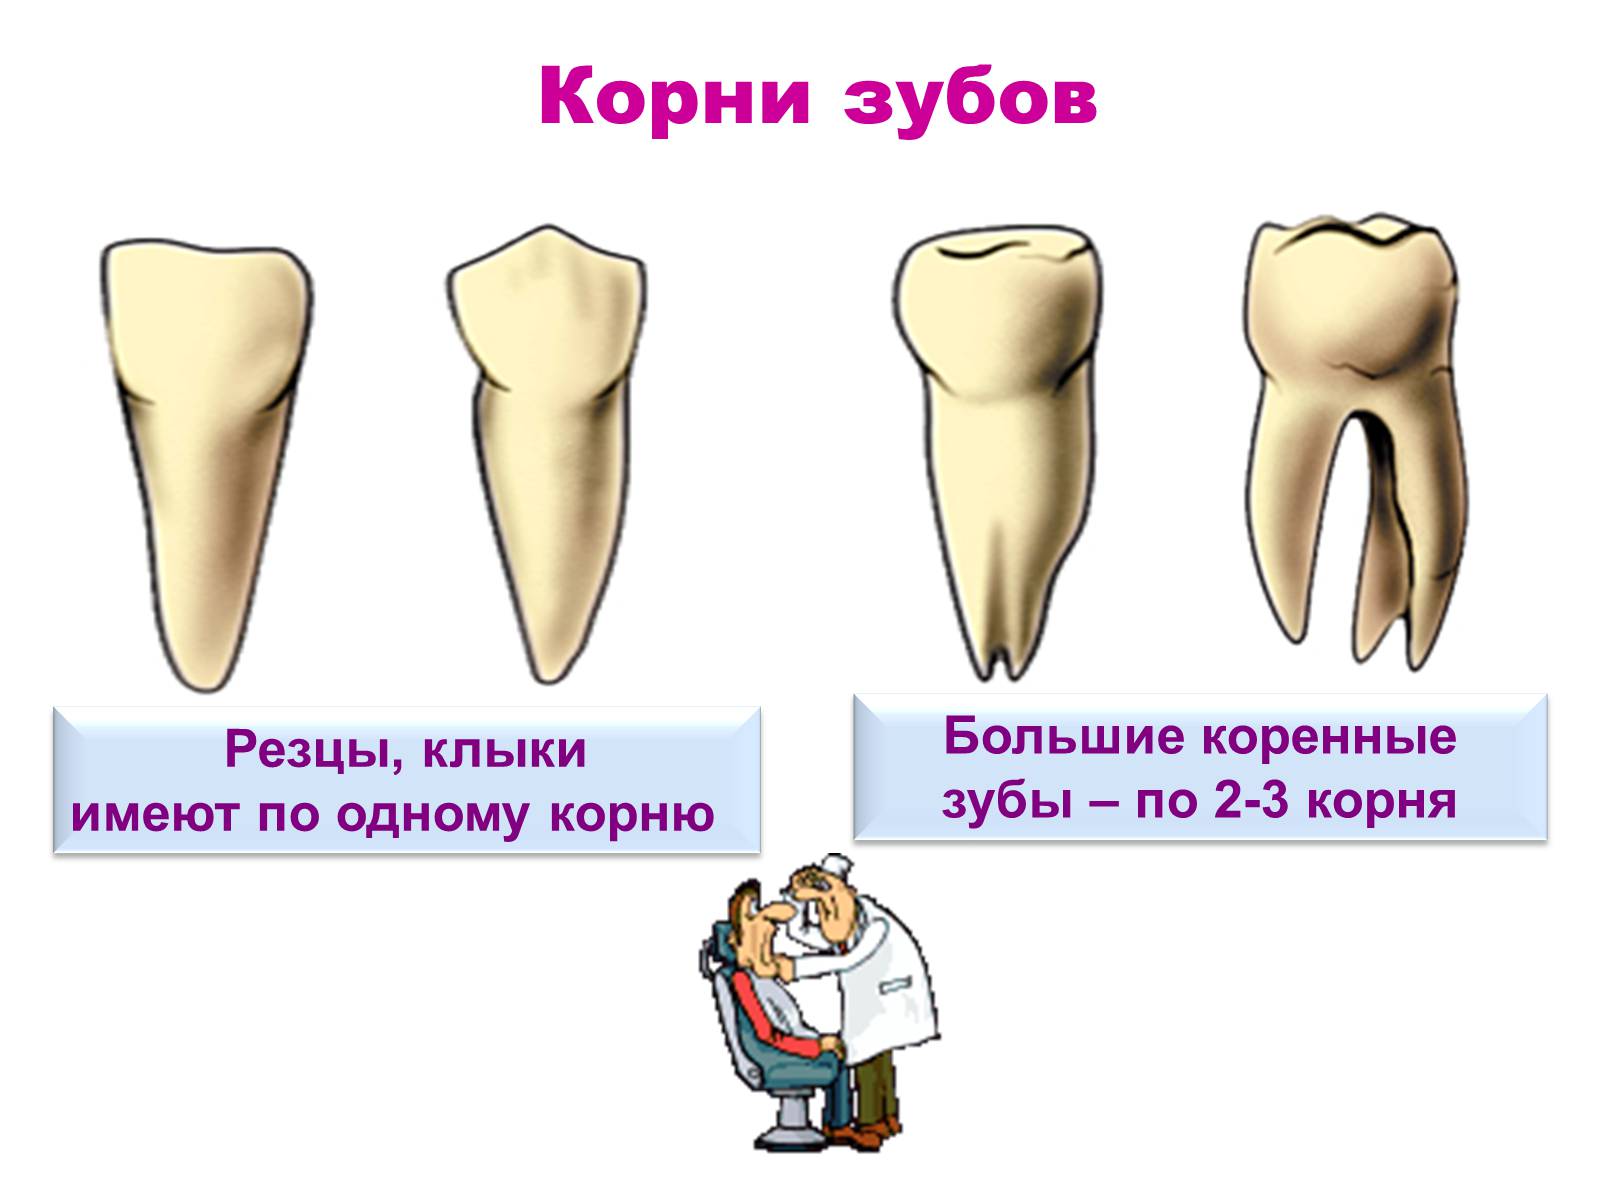 2 корня в зубе. Коренные зубы, резцы, резцы клыки. Строение молочного зуба резца. Большой корень коренного зуба.